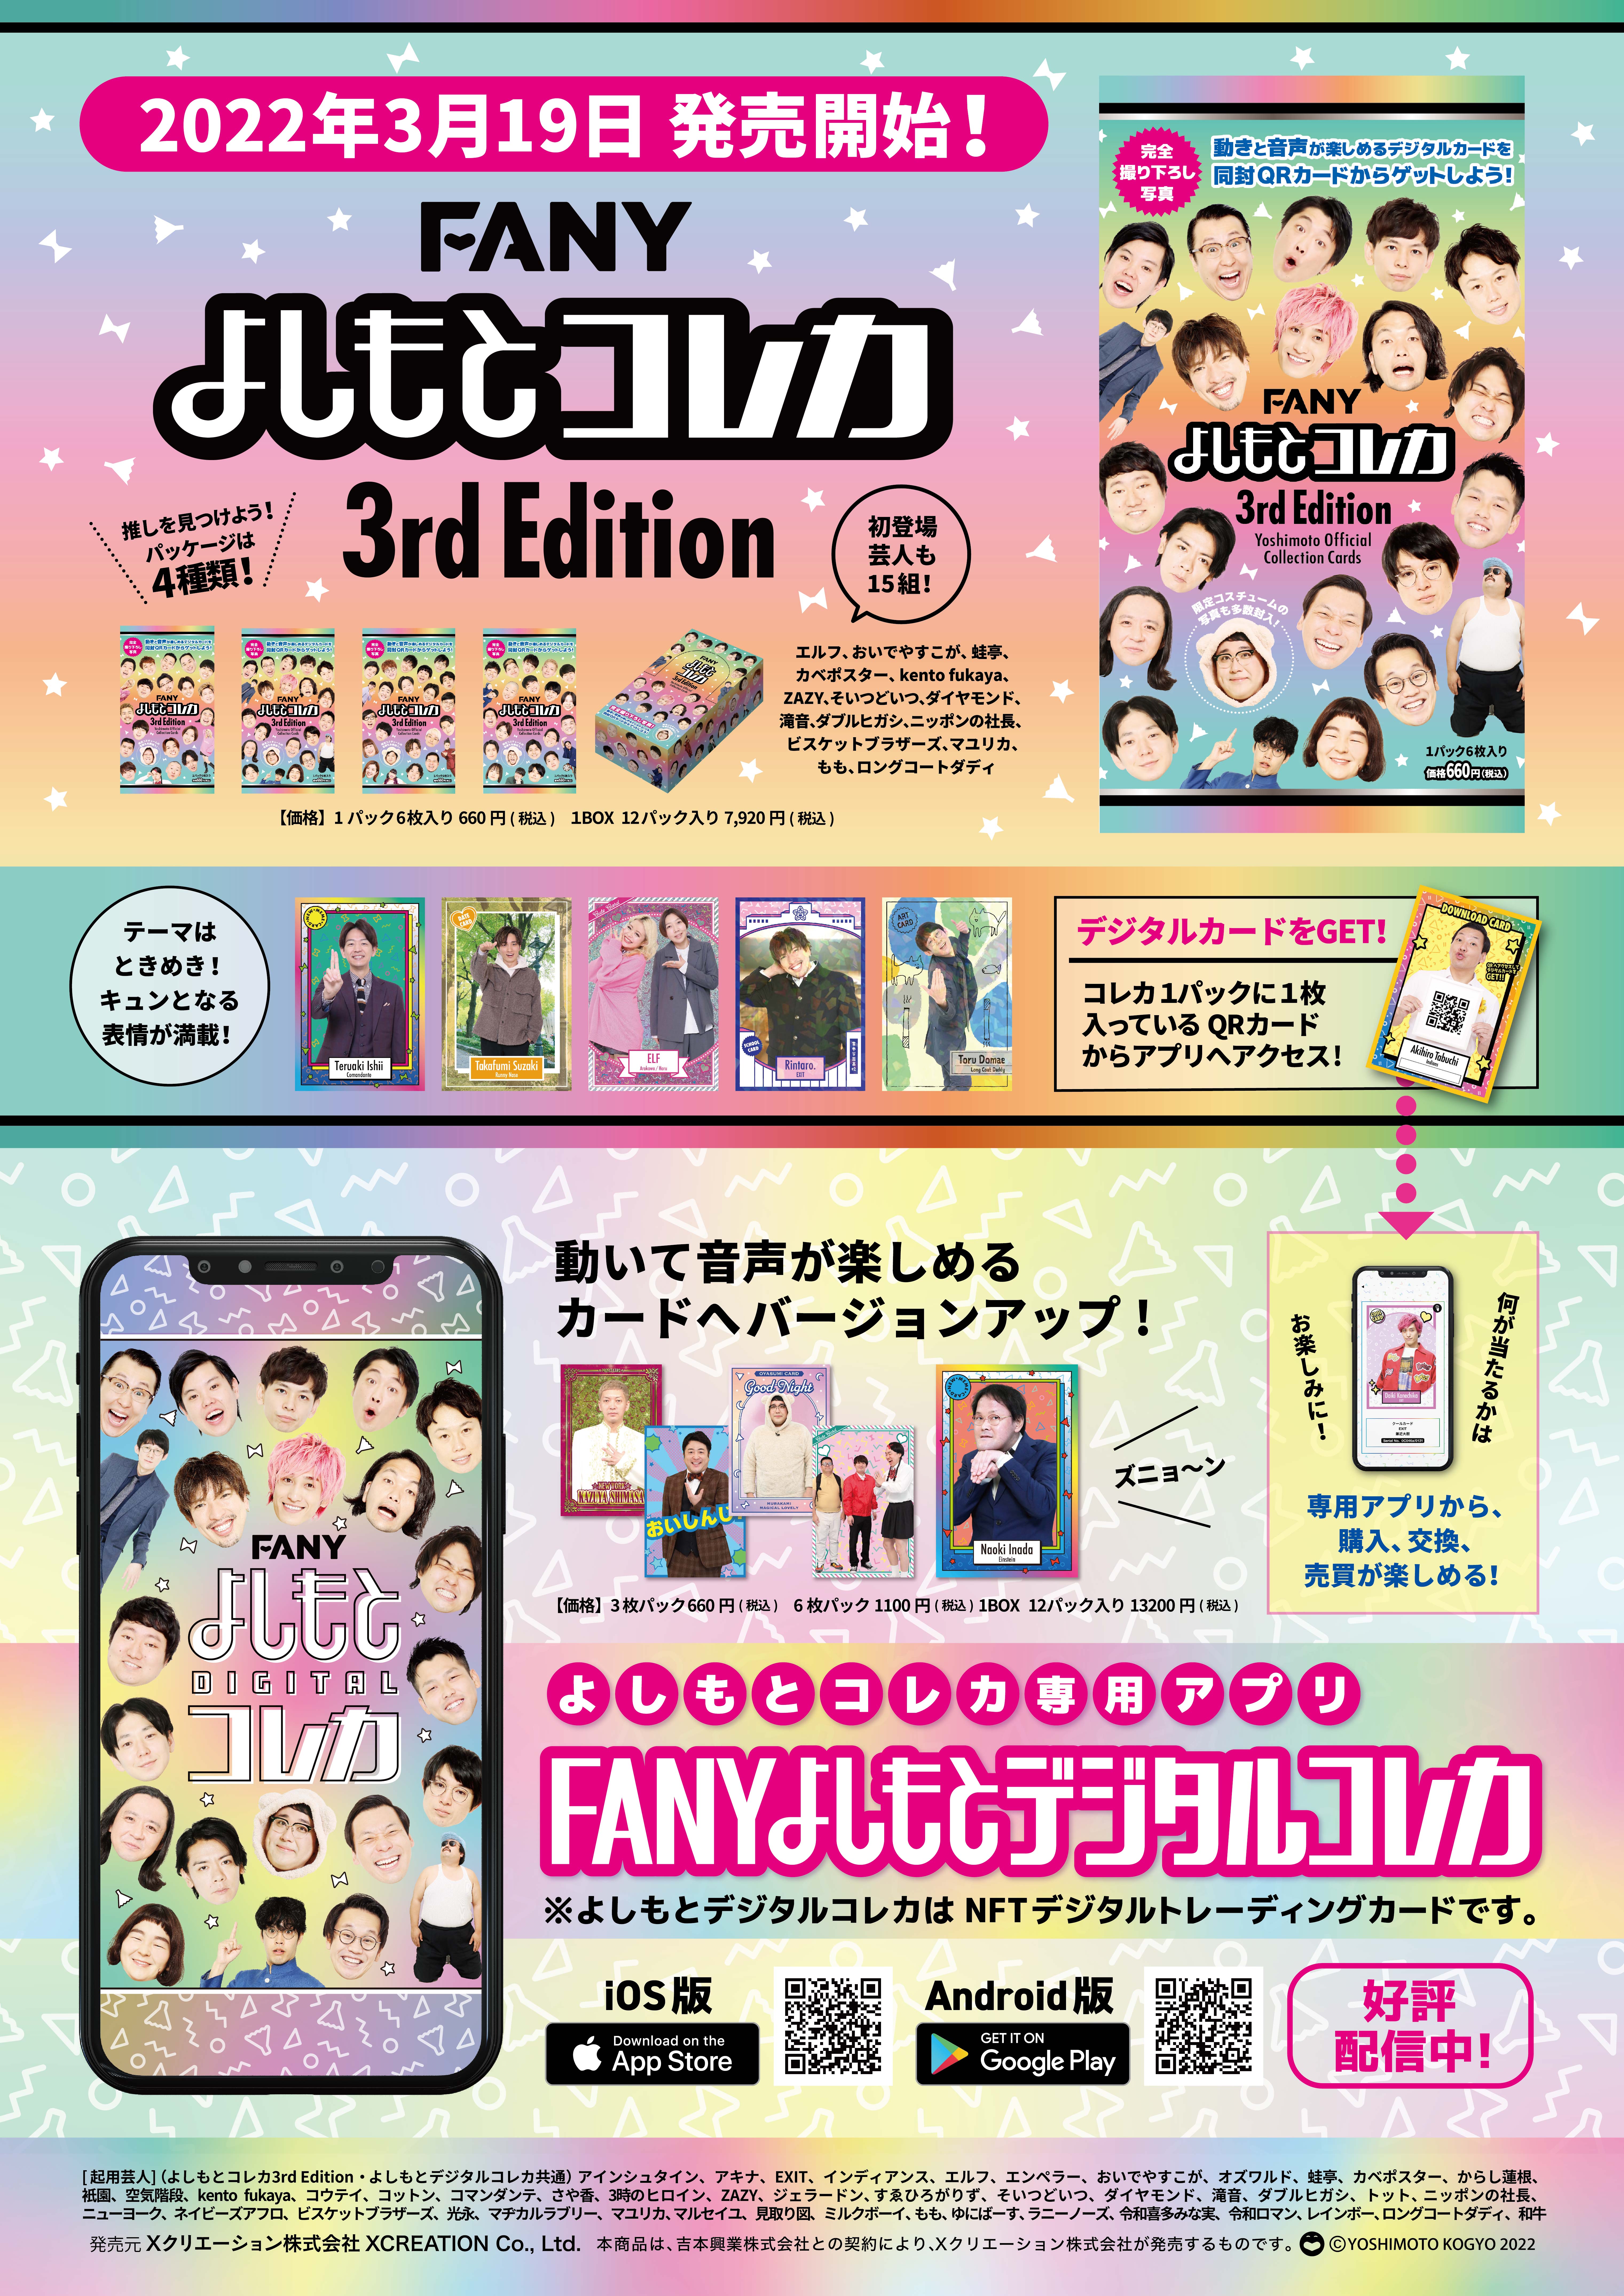 FANY よしもとコレカ 3rd Edition 祇園